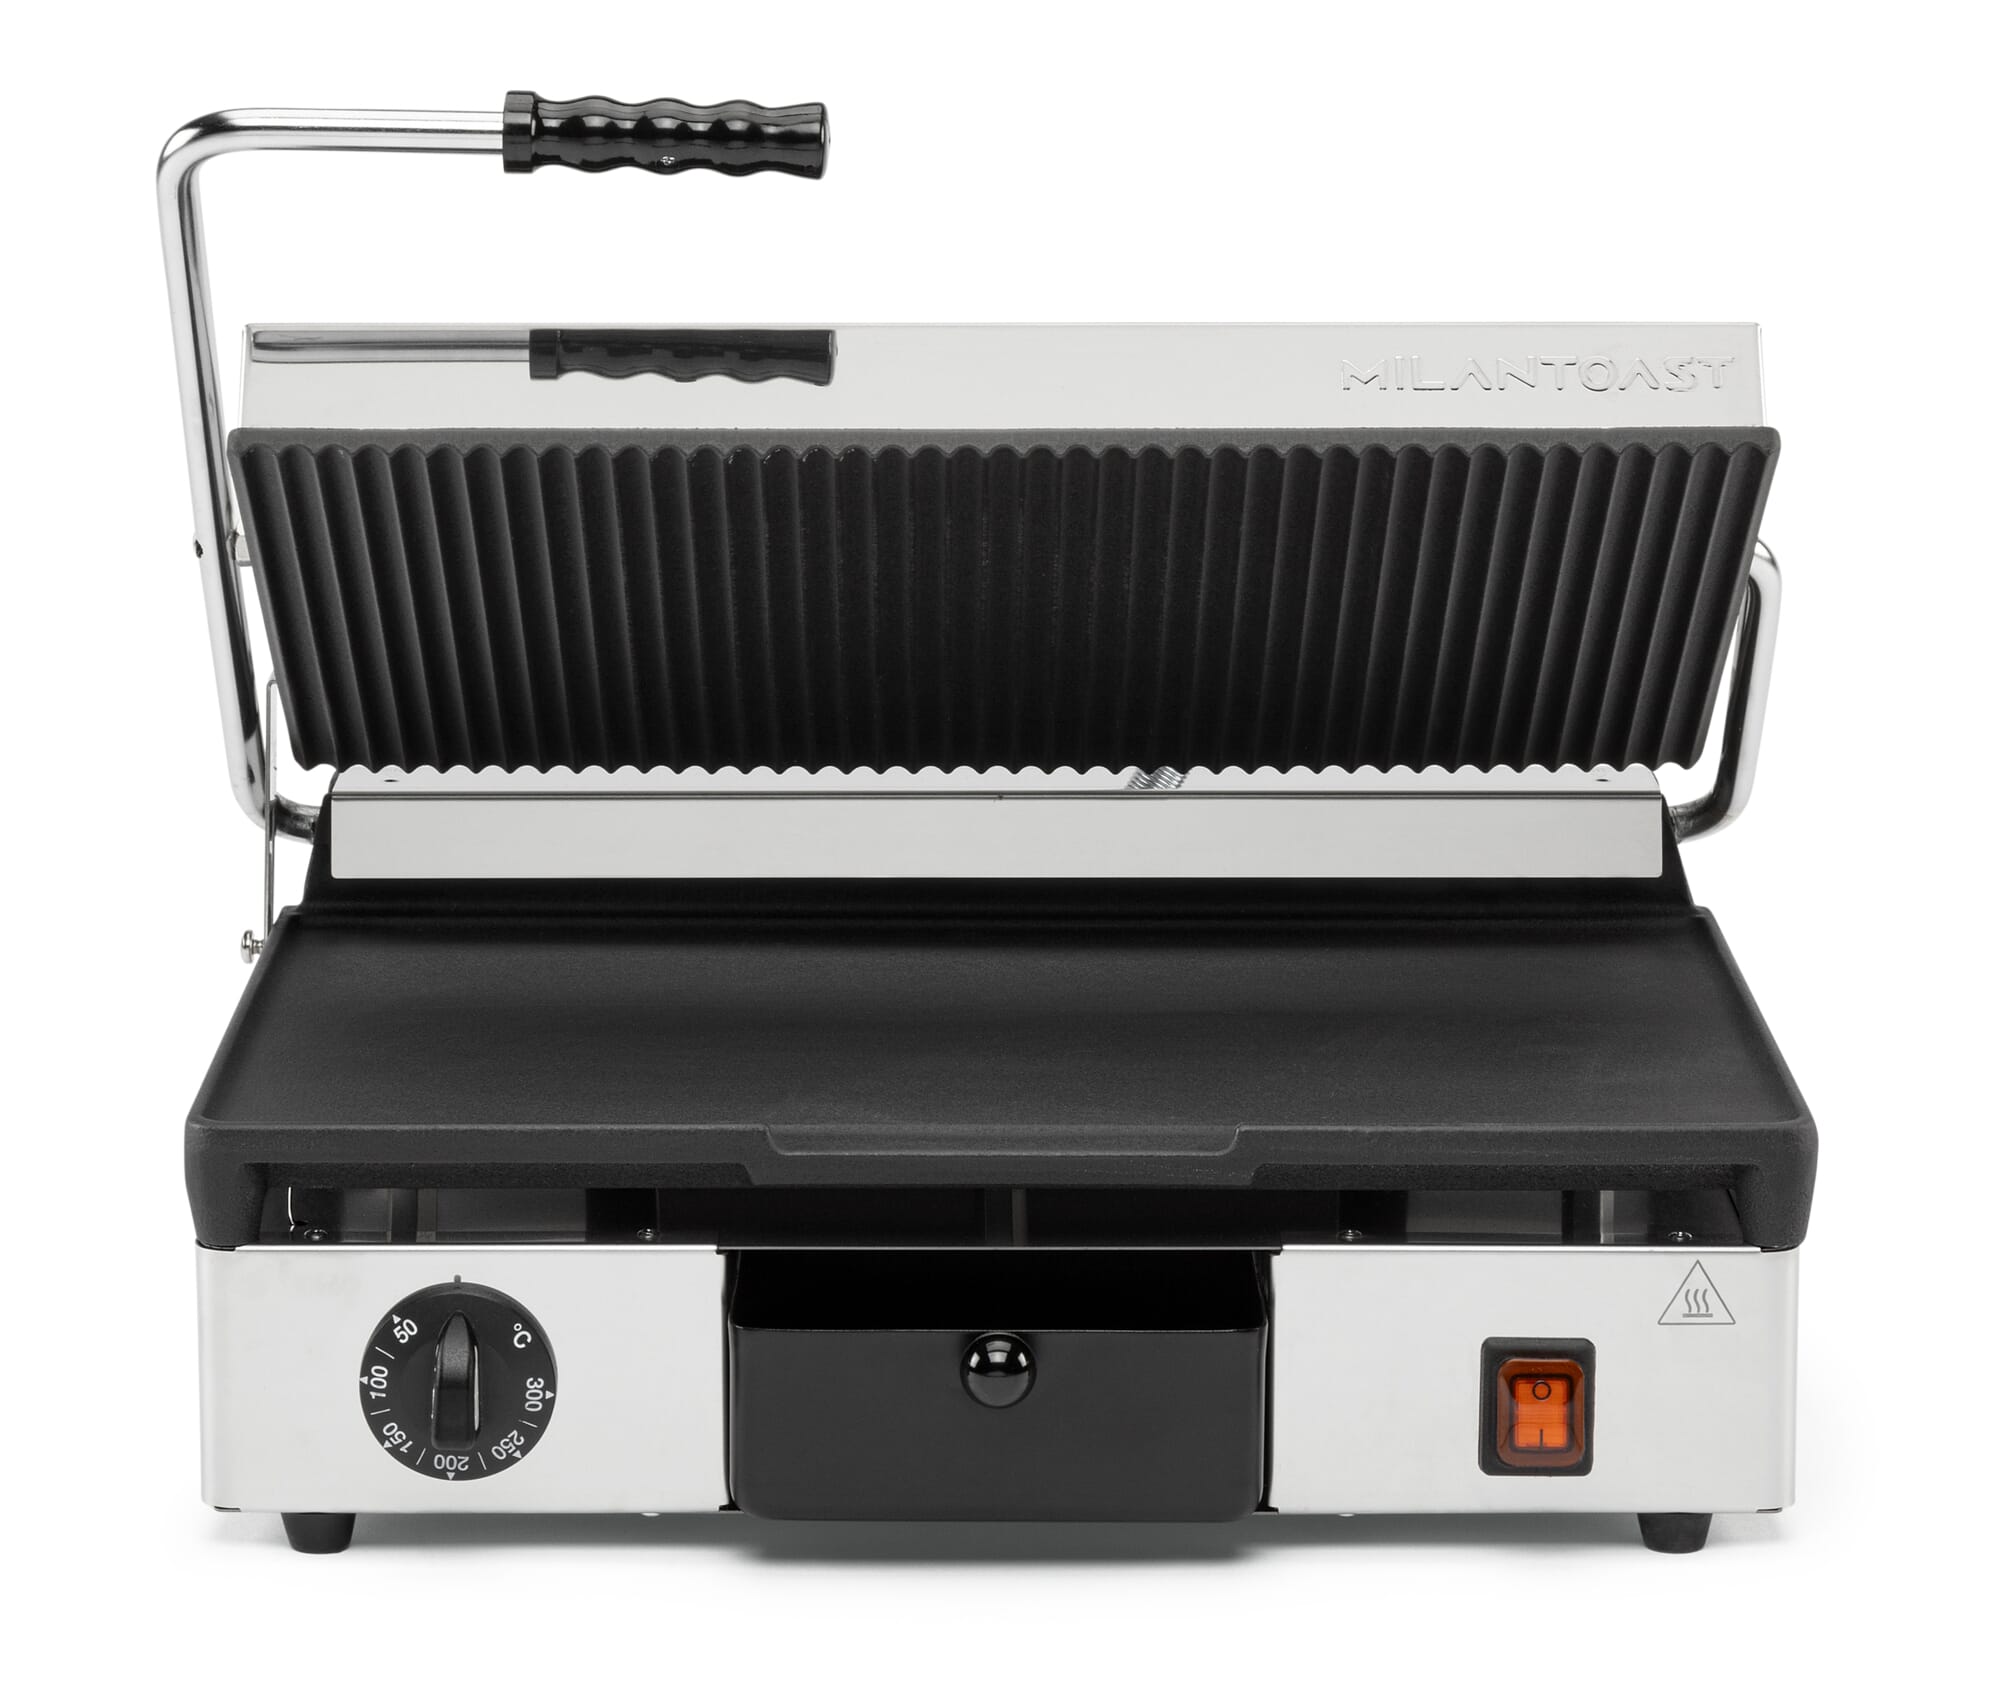 L530 Elektro Kontaktgrill Gerillt oder Glatt Toastmaschine Buffalo Toaster Grill 